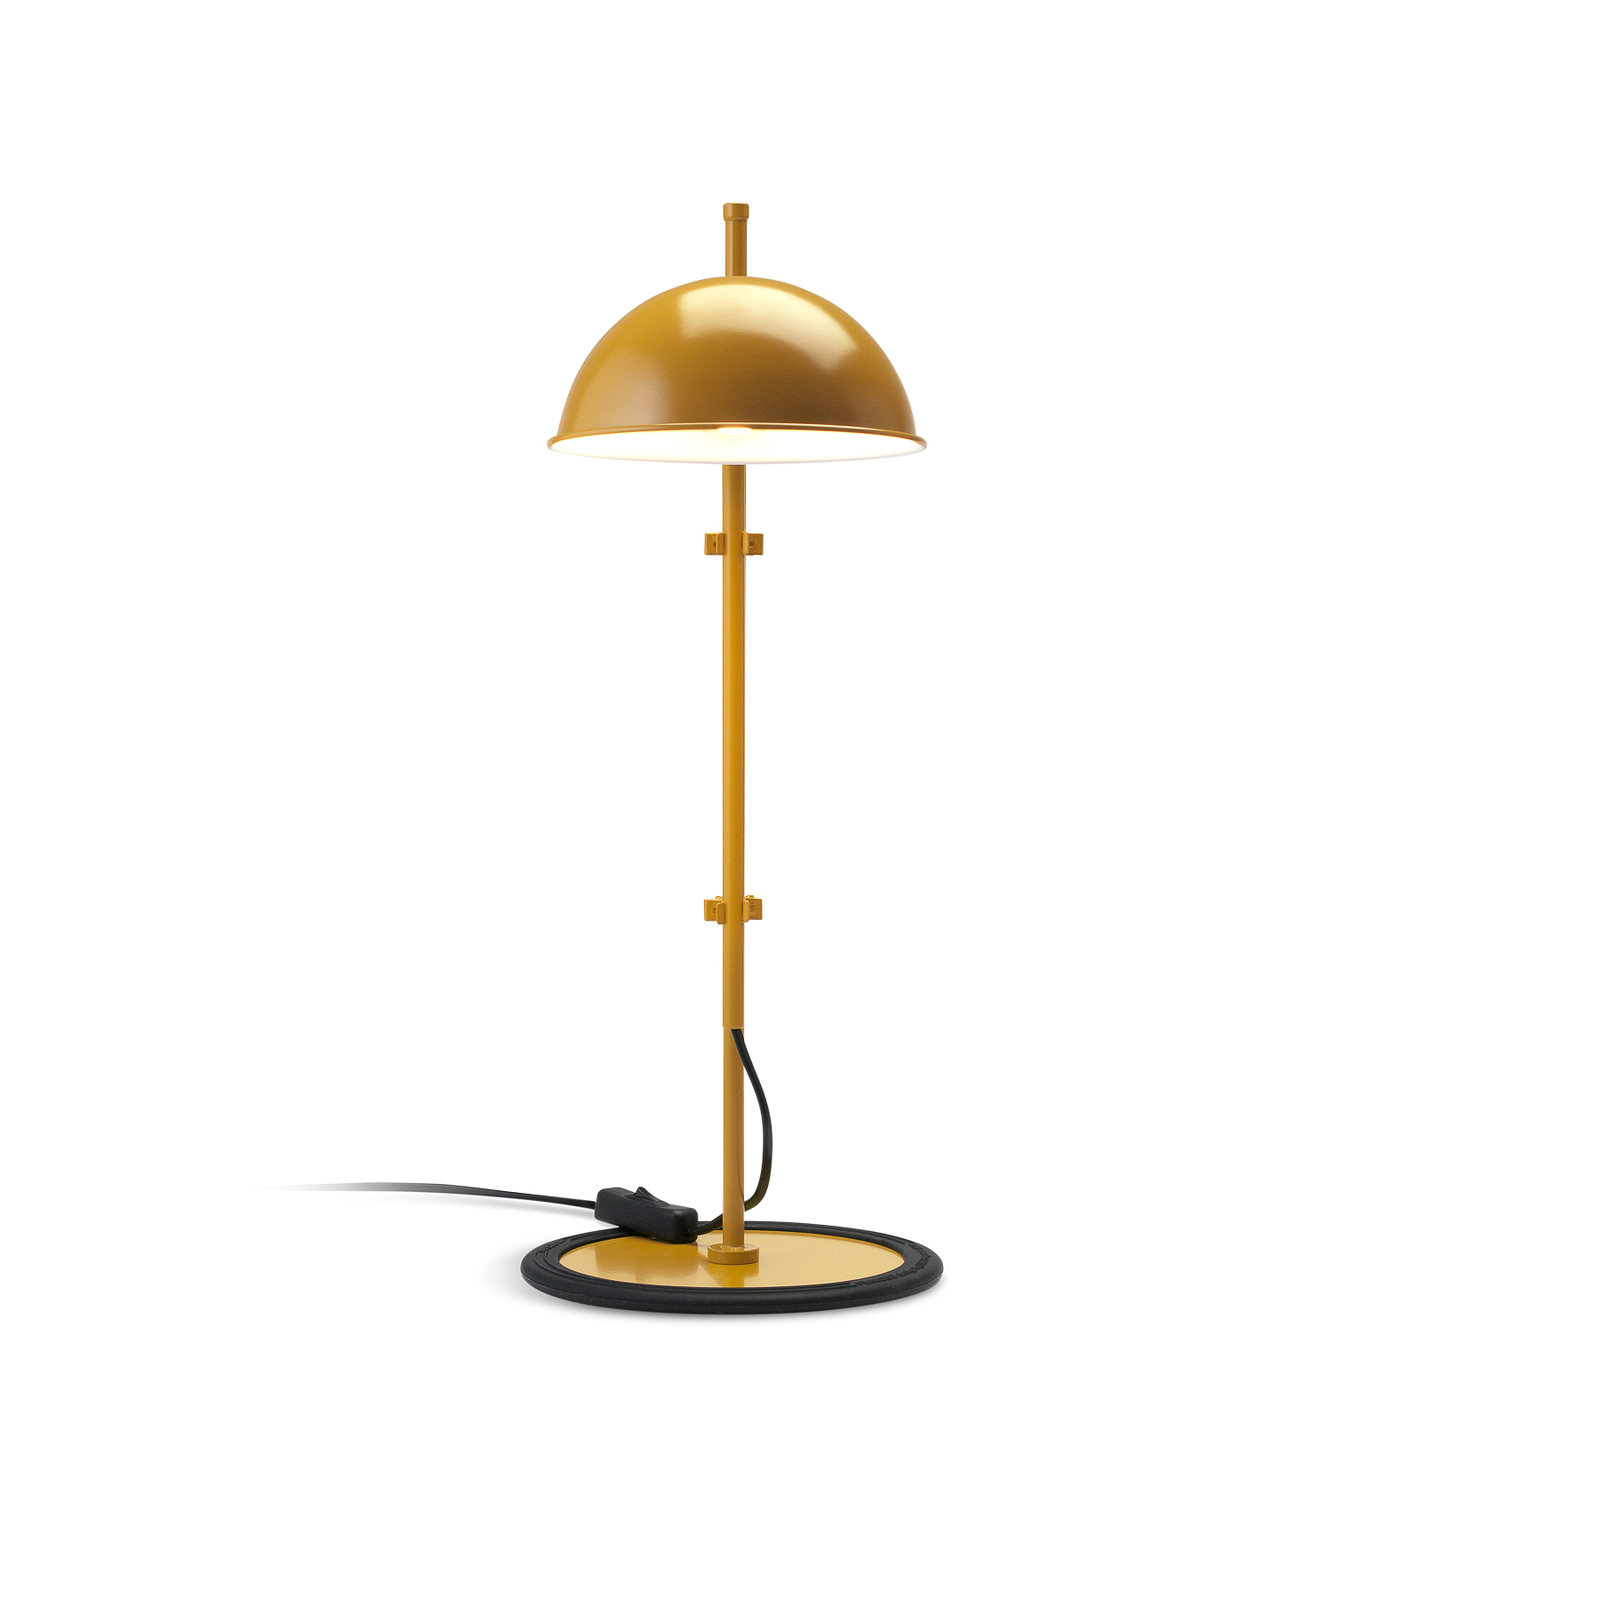 MARSET Funiculí asztali lámpa, mustár sárga